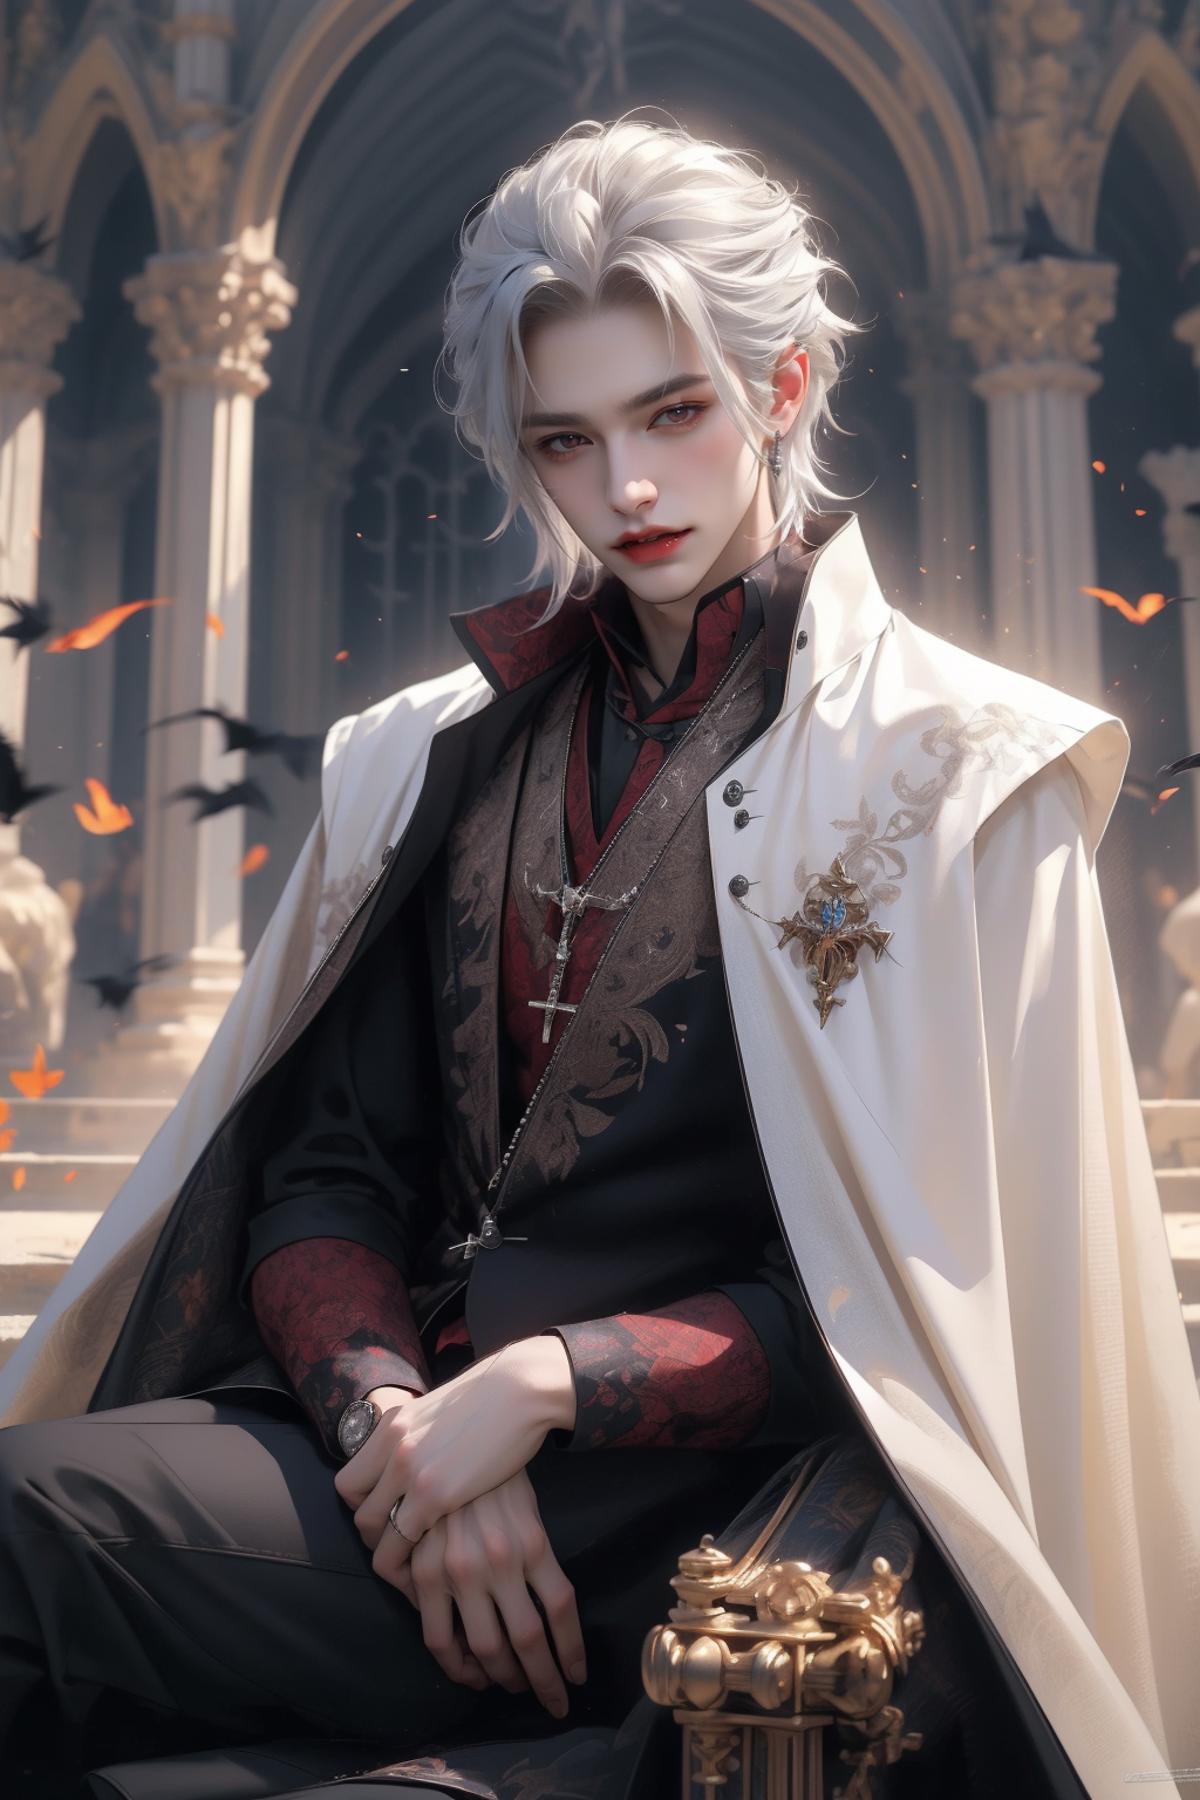 吸血鬼贵族Vampire Aristocrat image by woshimadai